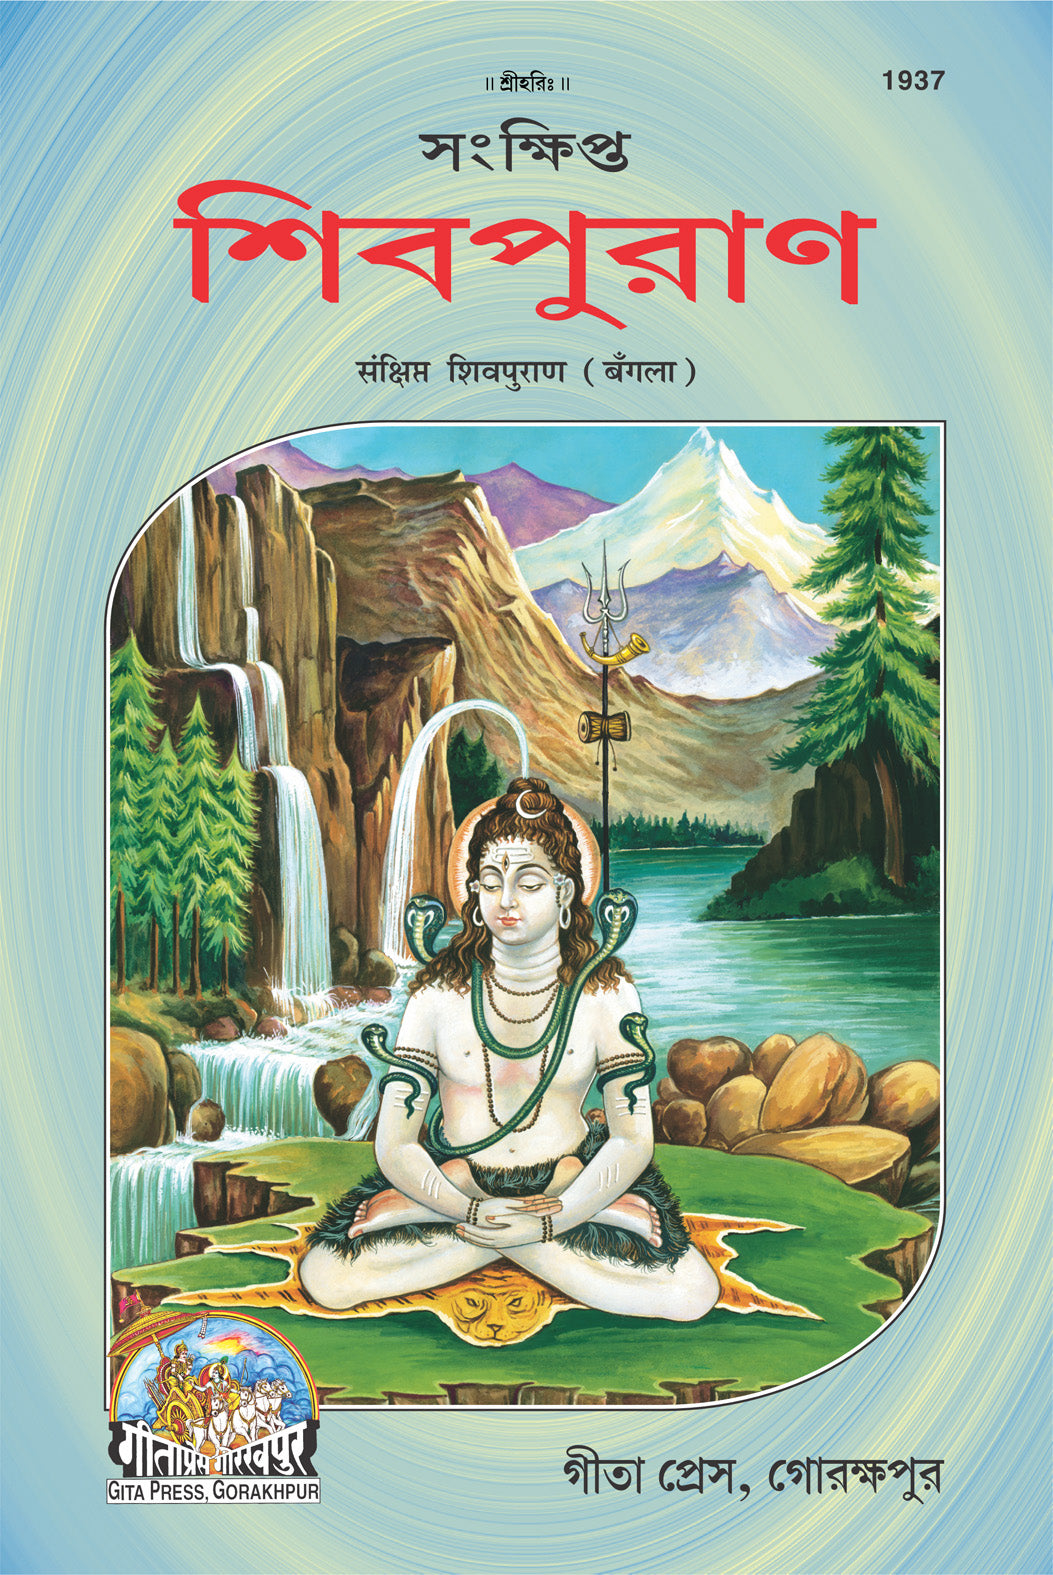 SANATAN  Sankshipt Shiv Puran (Bangla) by Gita Press